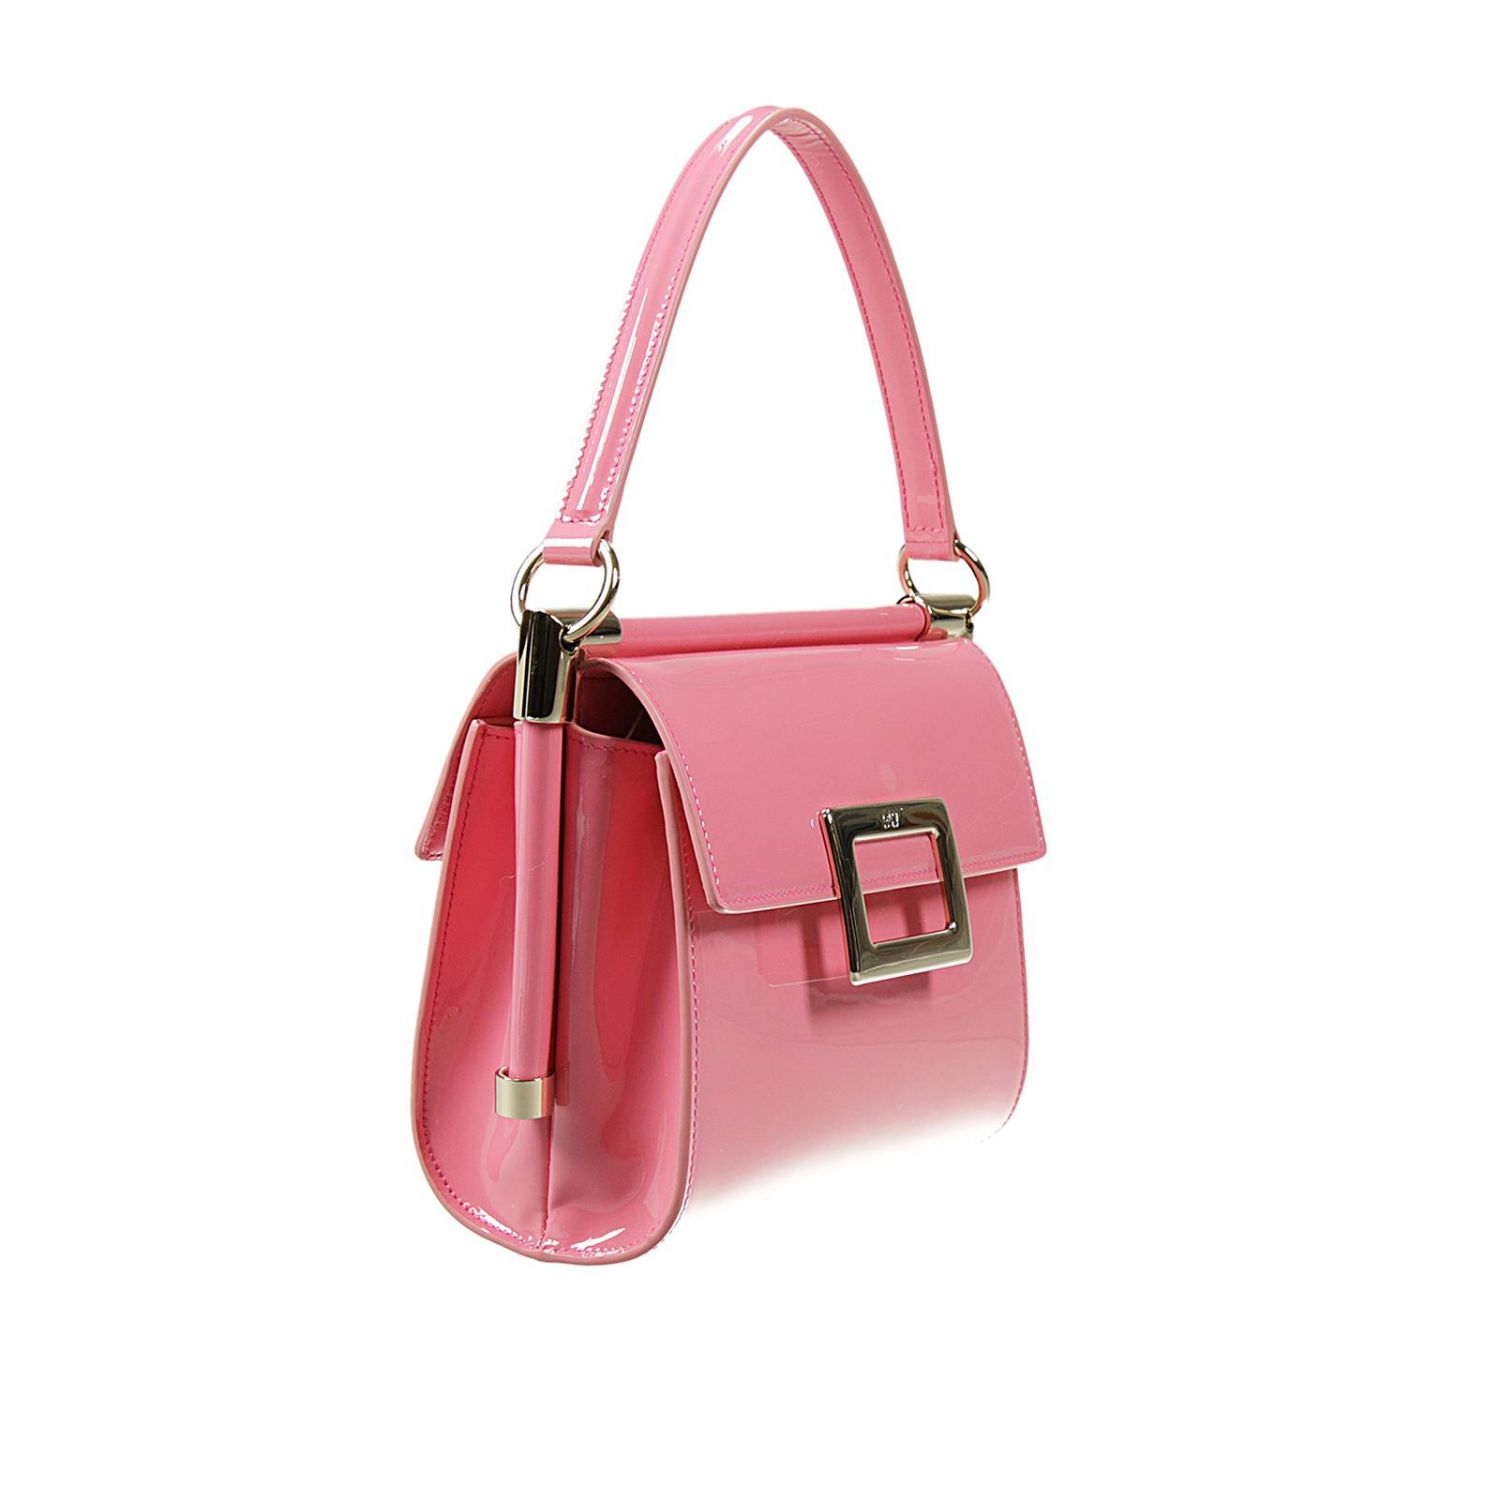 ROGER VIVIER: | Shoulder Bag Roger Vivier Women Pink | Shoulder Bag ...